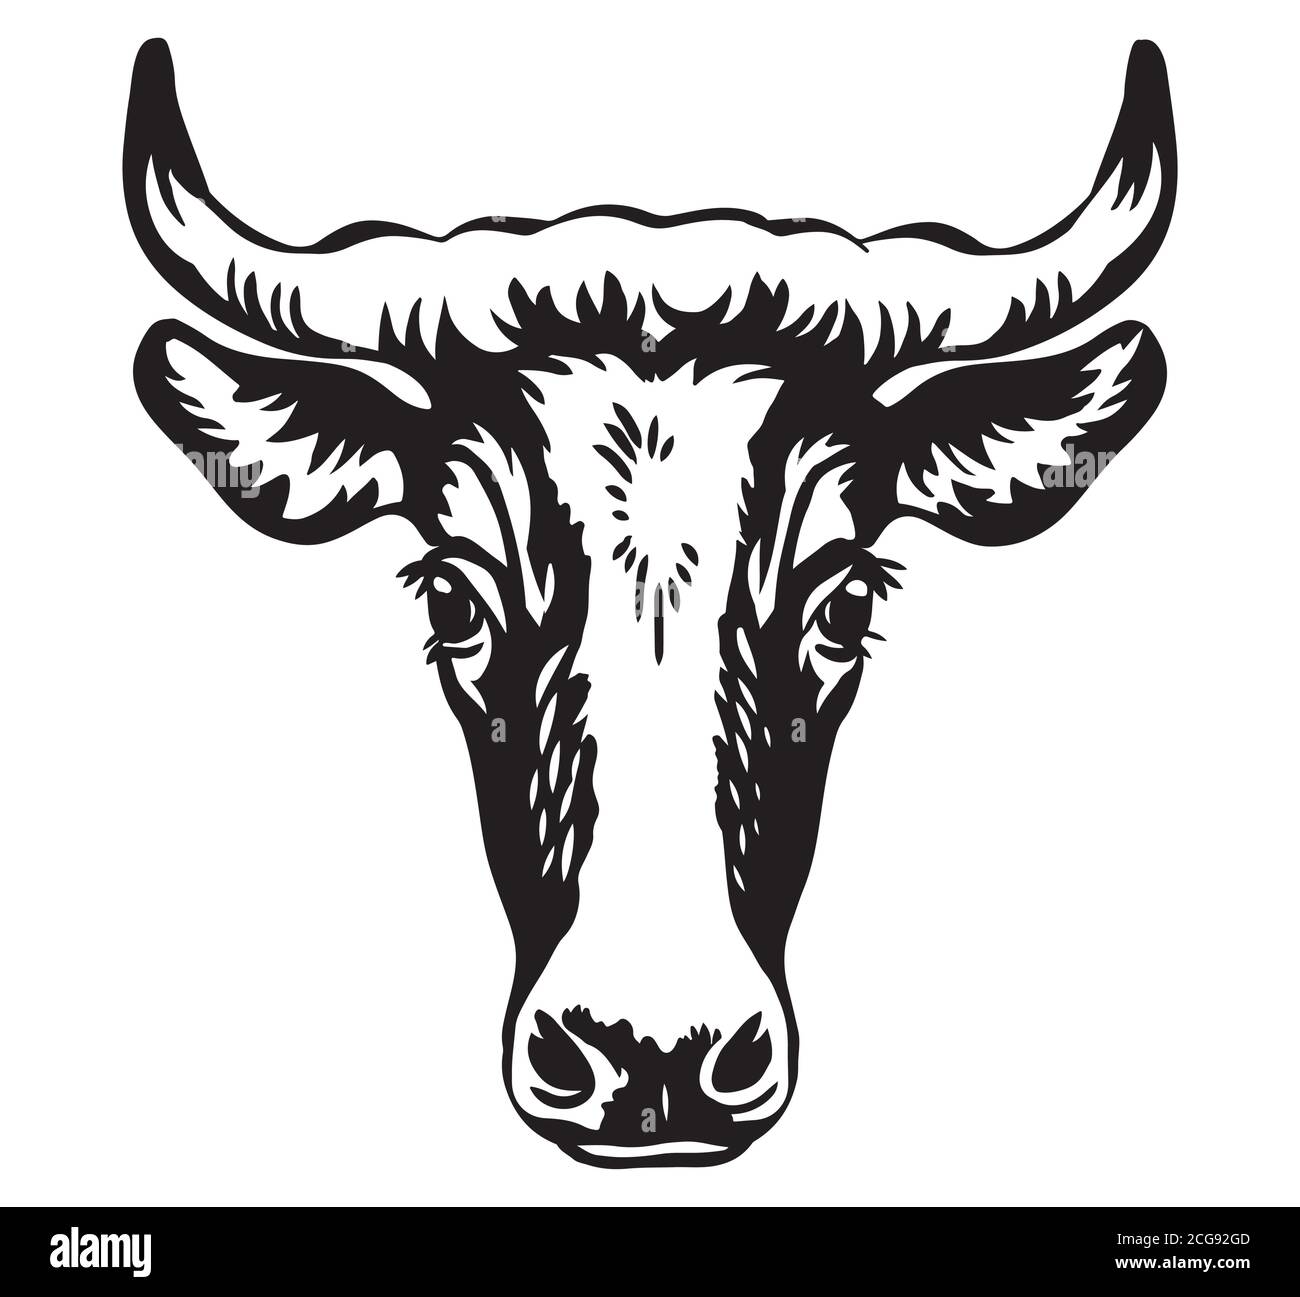 Vektor-Illustration von Stier Kopf Symbol in schwarzer Farbe isoliert auf weiß. Gravur Vorlage Bild der Kuh. Design-Element für Poster, T-Shirt, Emblem, l Stock Vektor